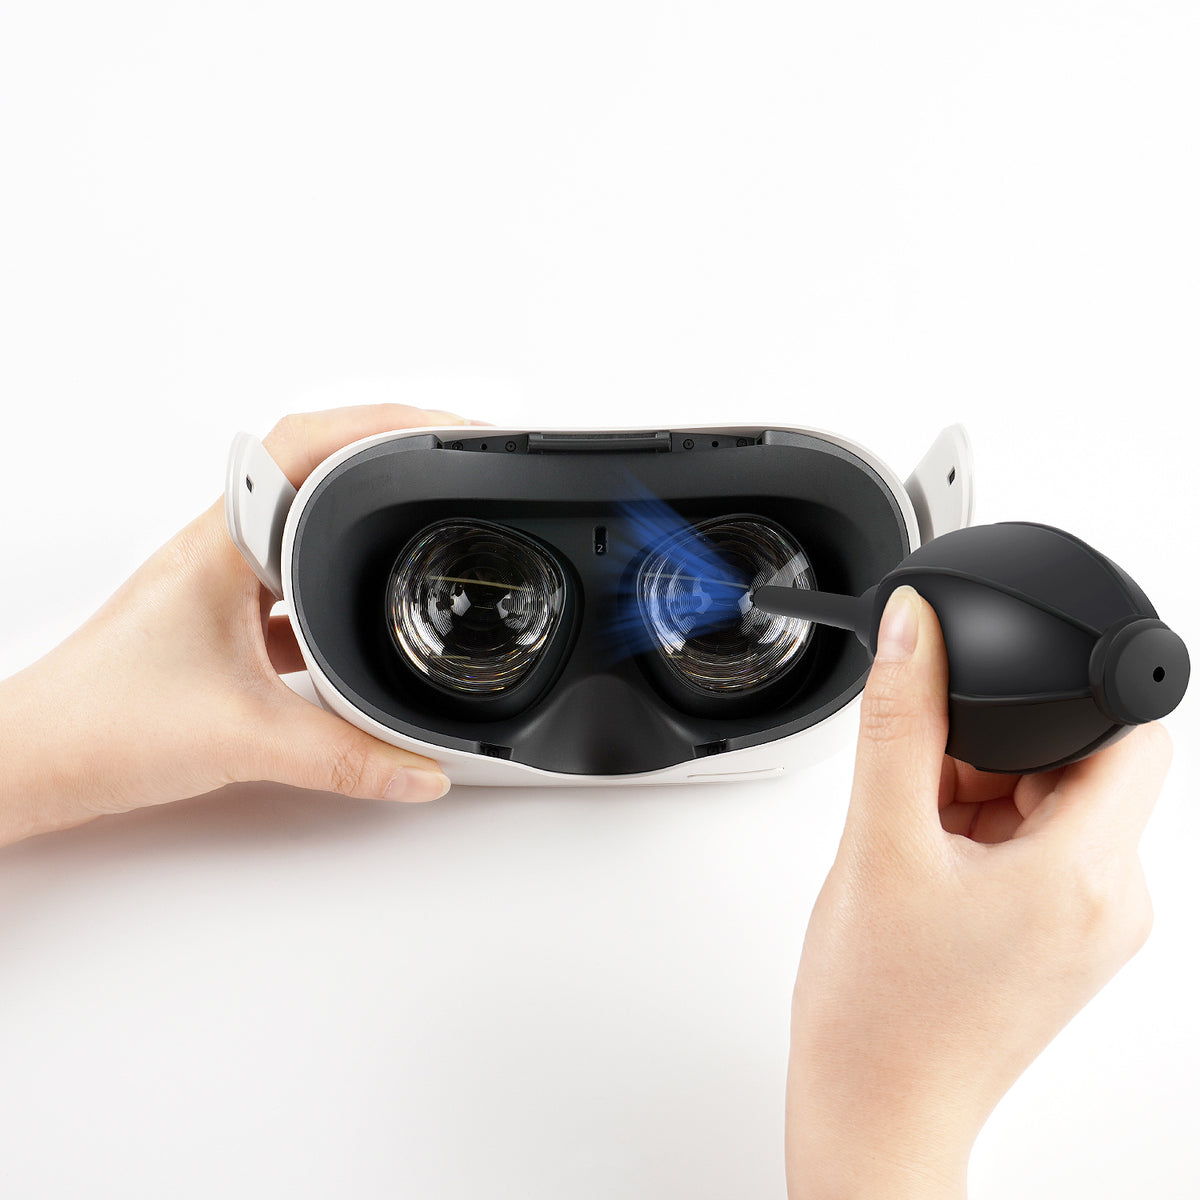 ZyberVR Virtual Reality Headset Lenses Cleaner Kit